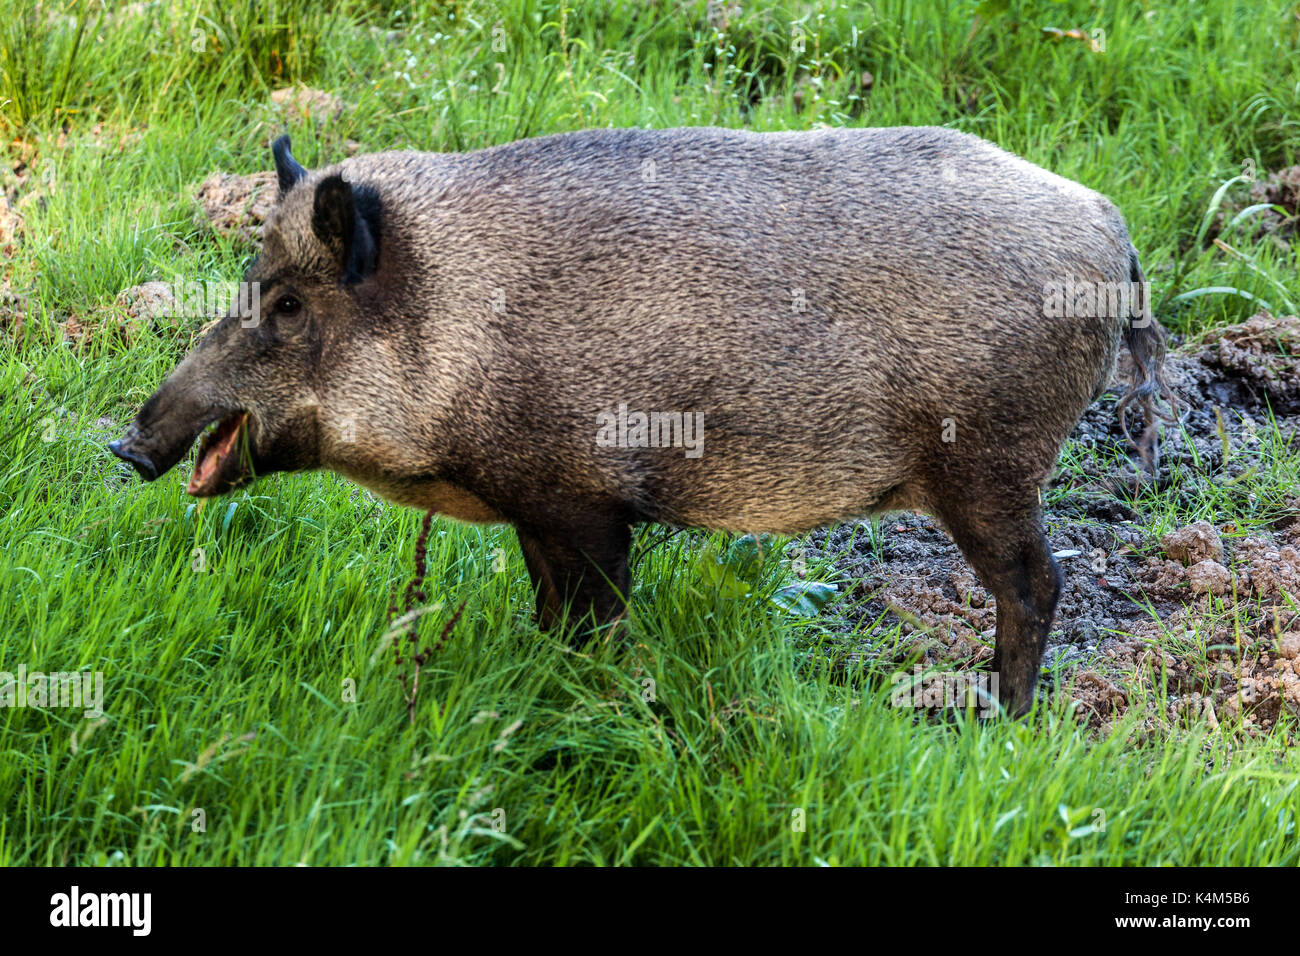 Weibliche Wildschweine, Sus scrofa, Tschechische Republik Stockfotografie -  Alamy